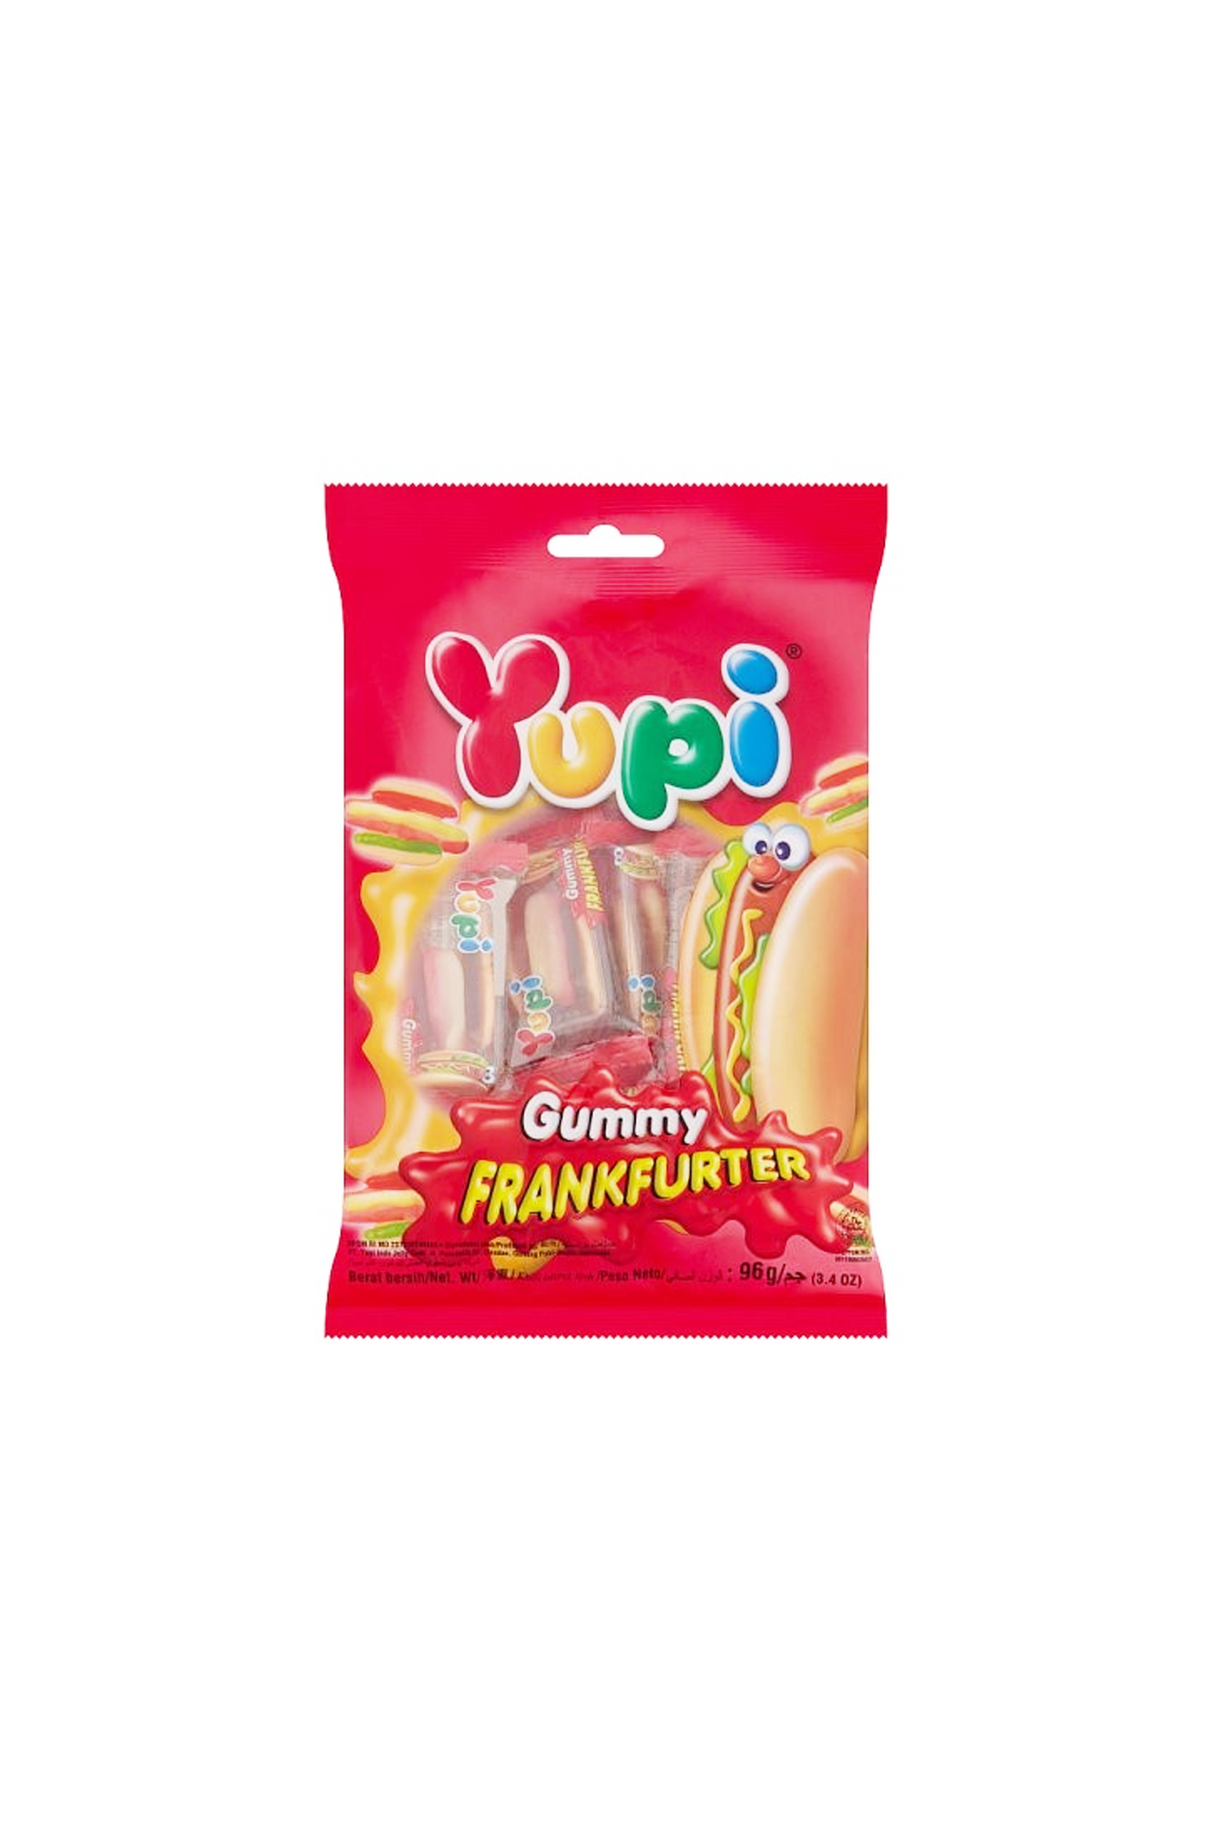 yupi gummy frankfurter jelly